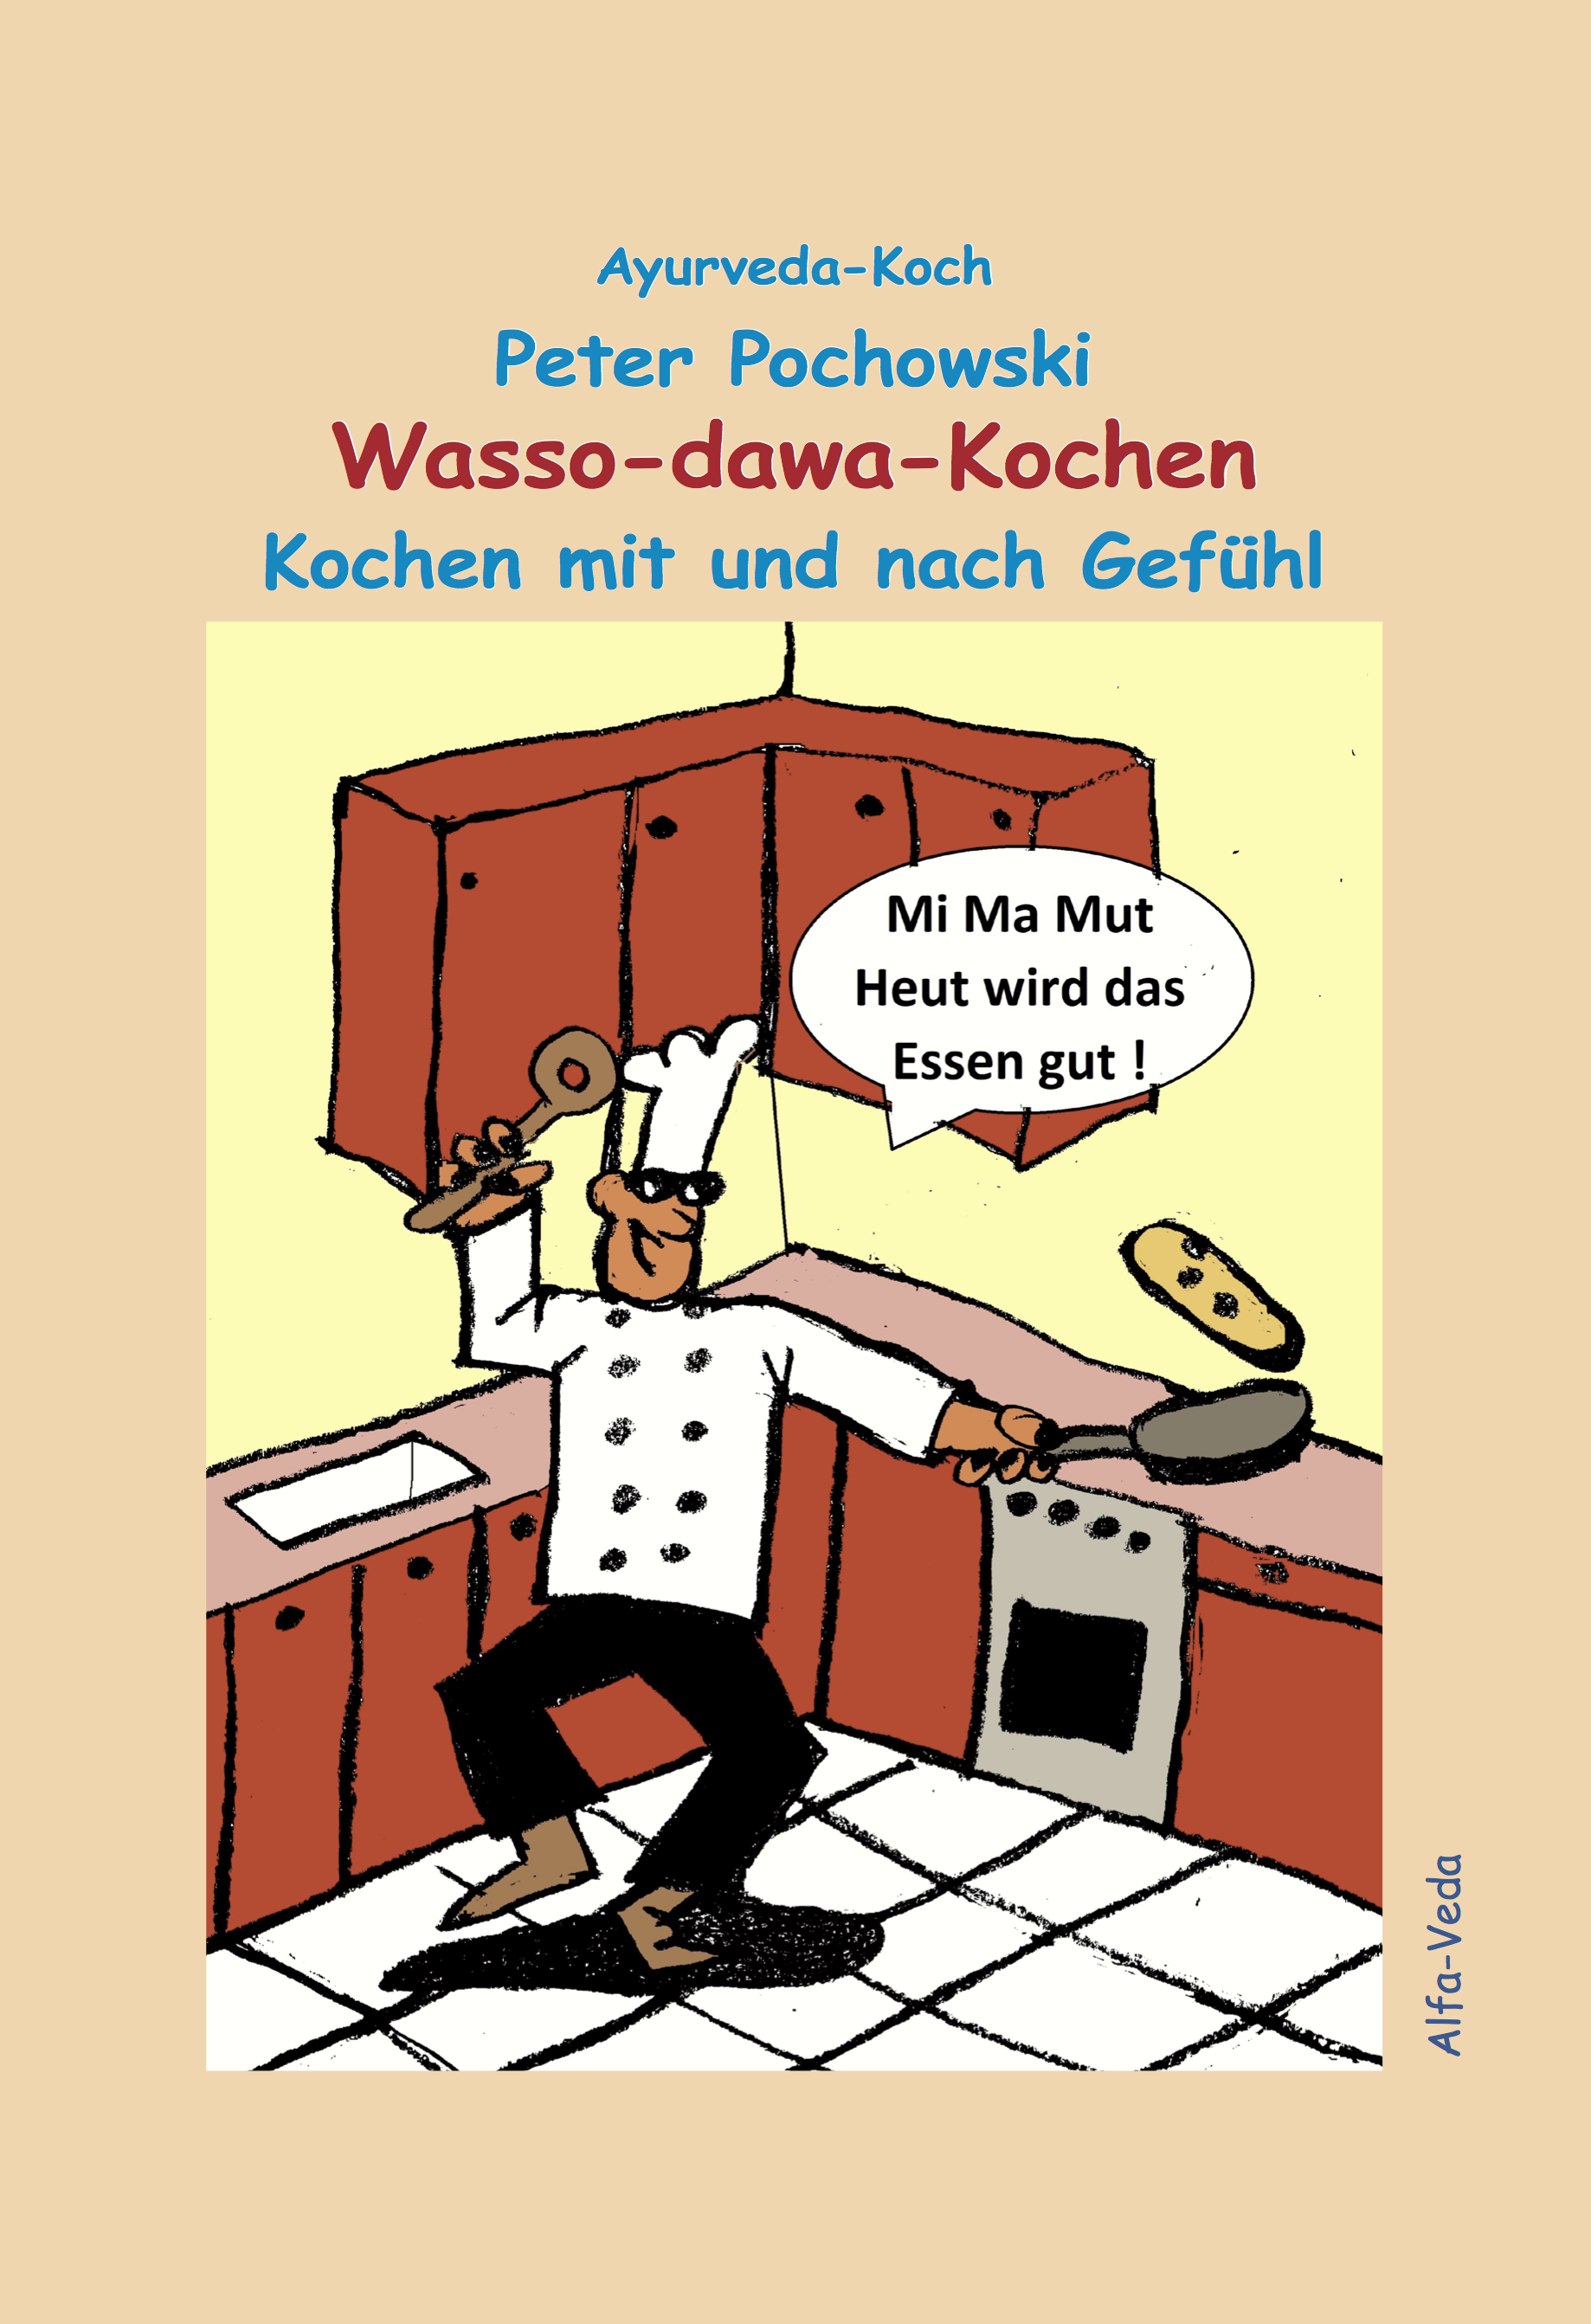 wasso-dawa-kochen kochbuch peter pochowski